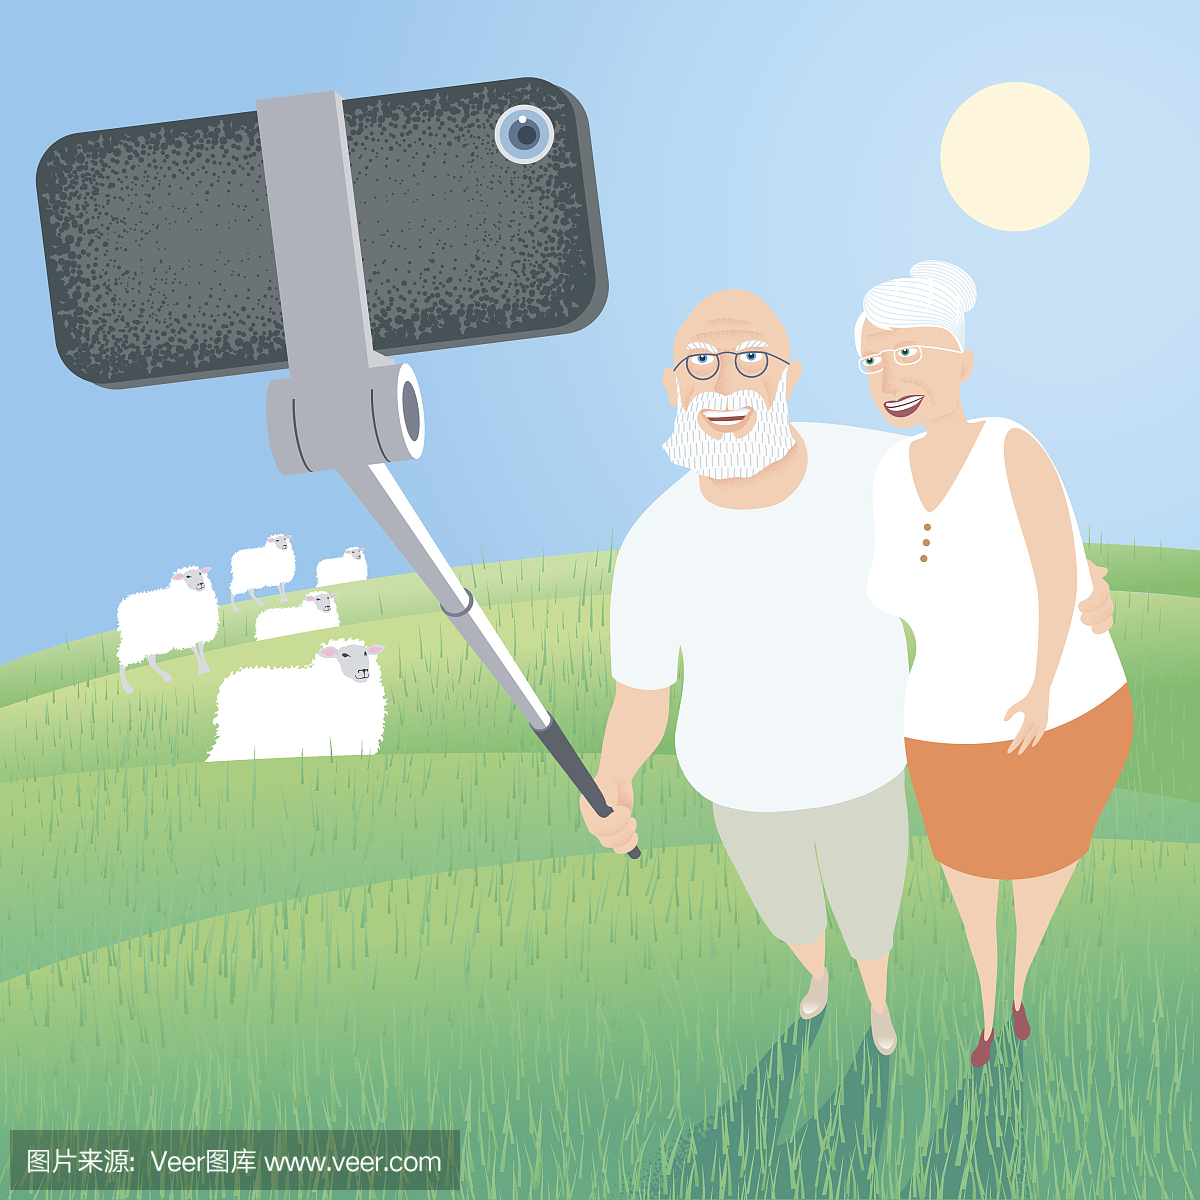 一组老人用智能手机制作自拍照片